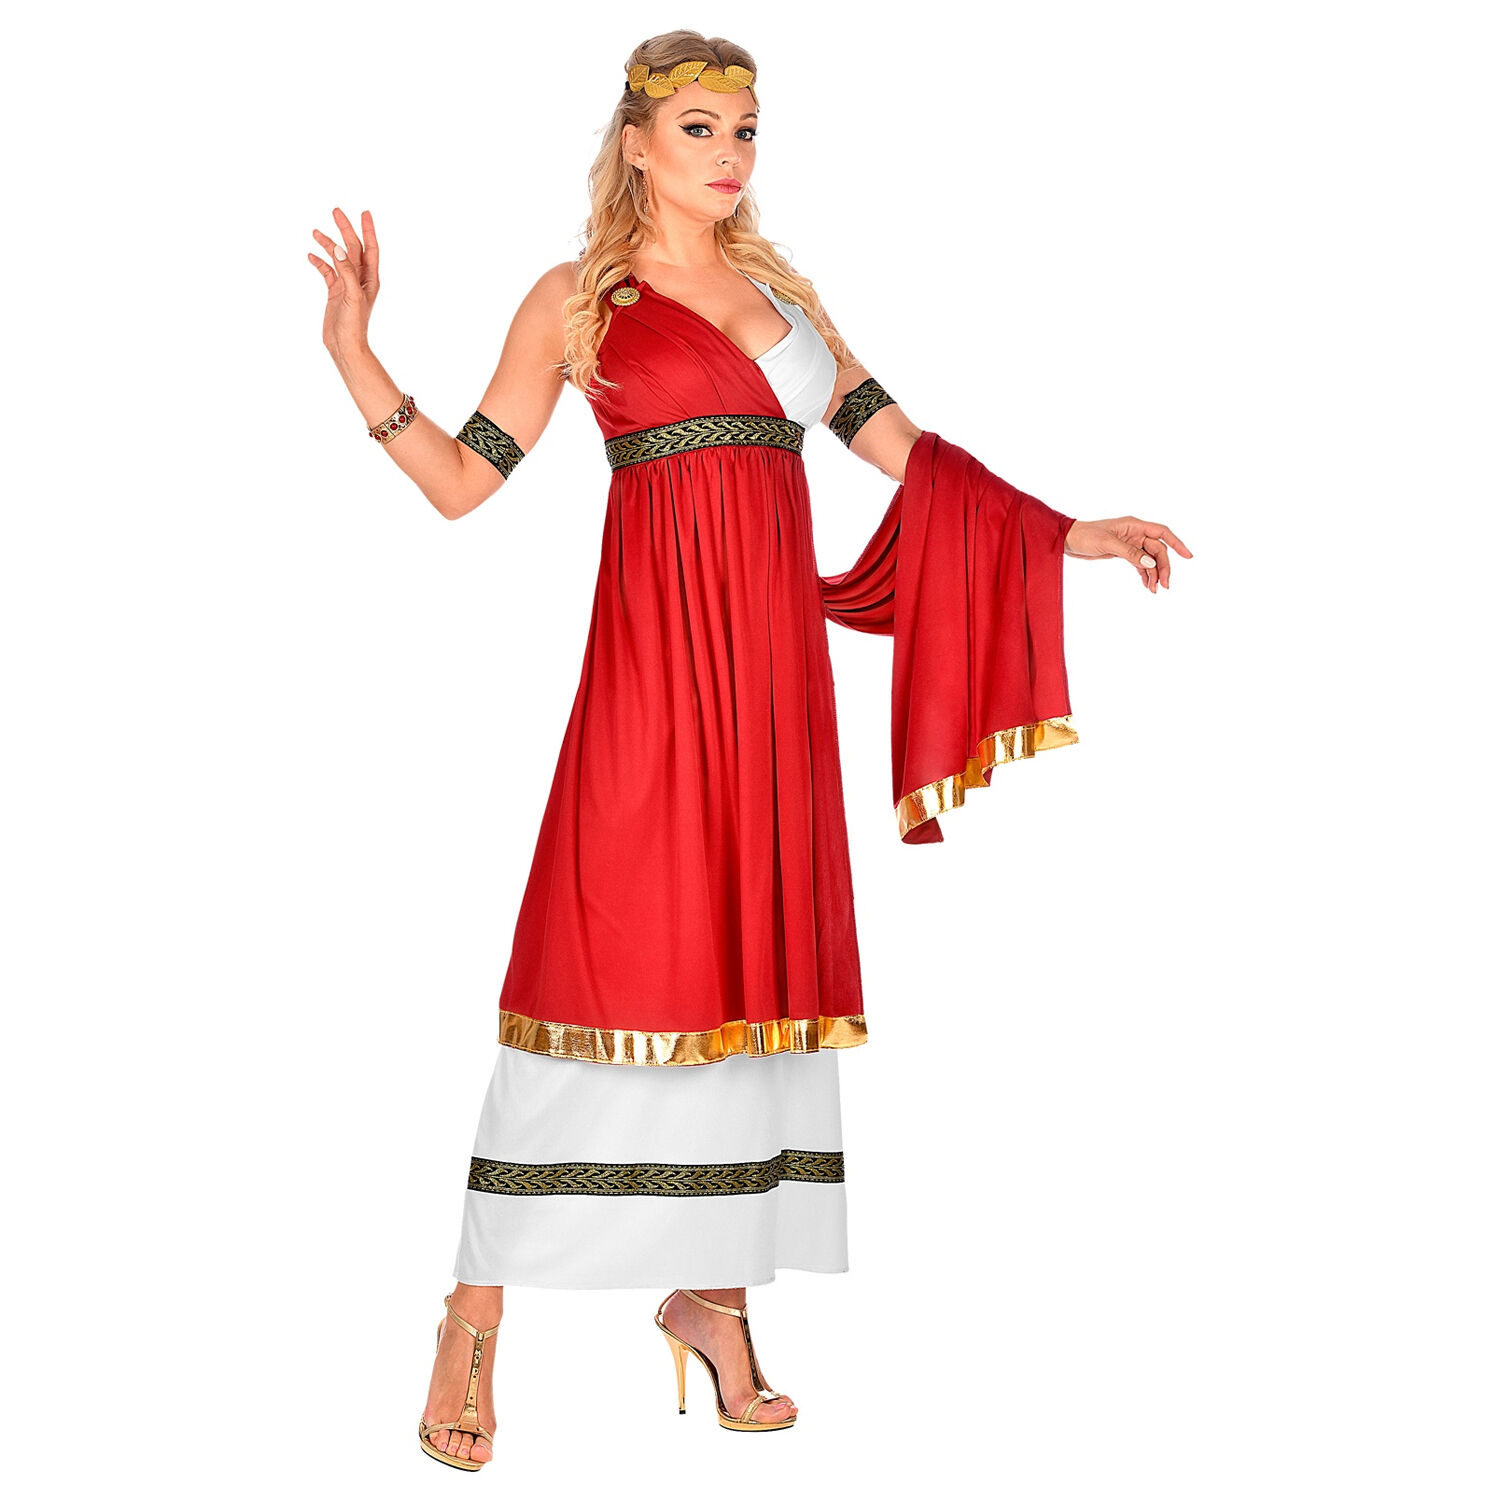 NEU Damen-Kostm Rmische Kaiserin, Kleid mit Umhang, Armbndern und Lorbeerkranz, Gr. S Bild 2